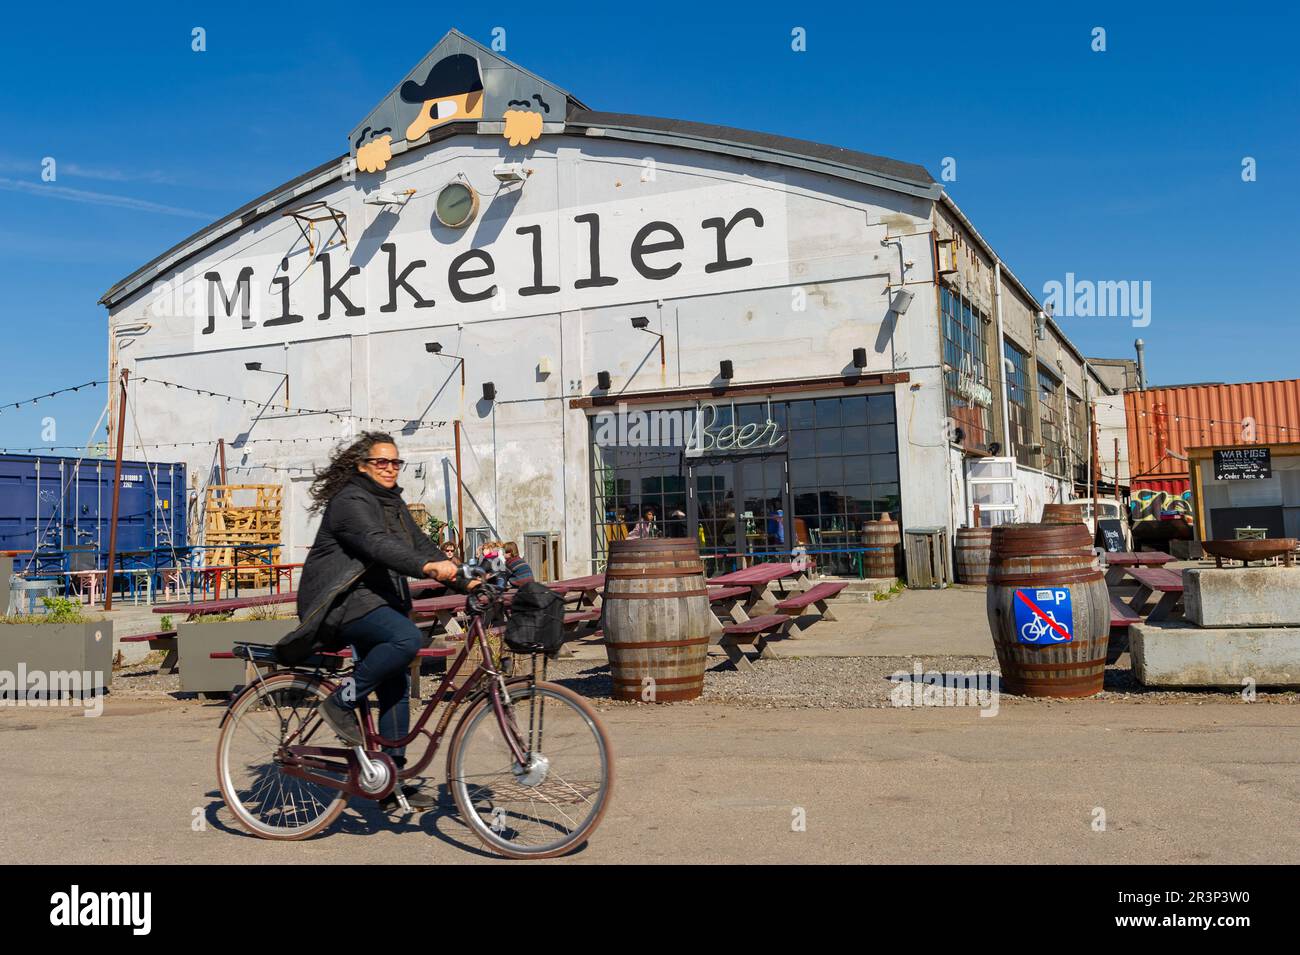 Mikkeller Baghaven Brewpub, Copenhagen, Denmark Stock Photo